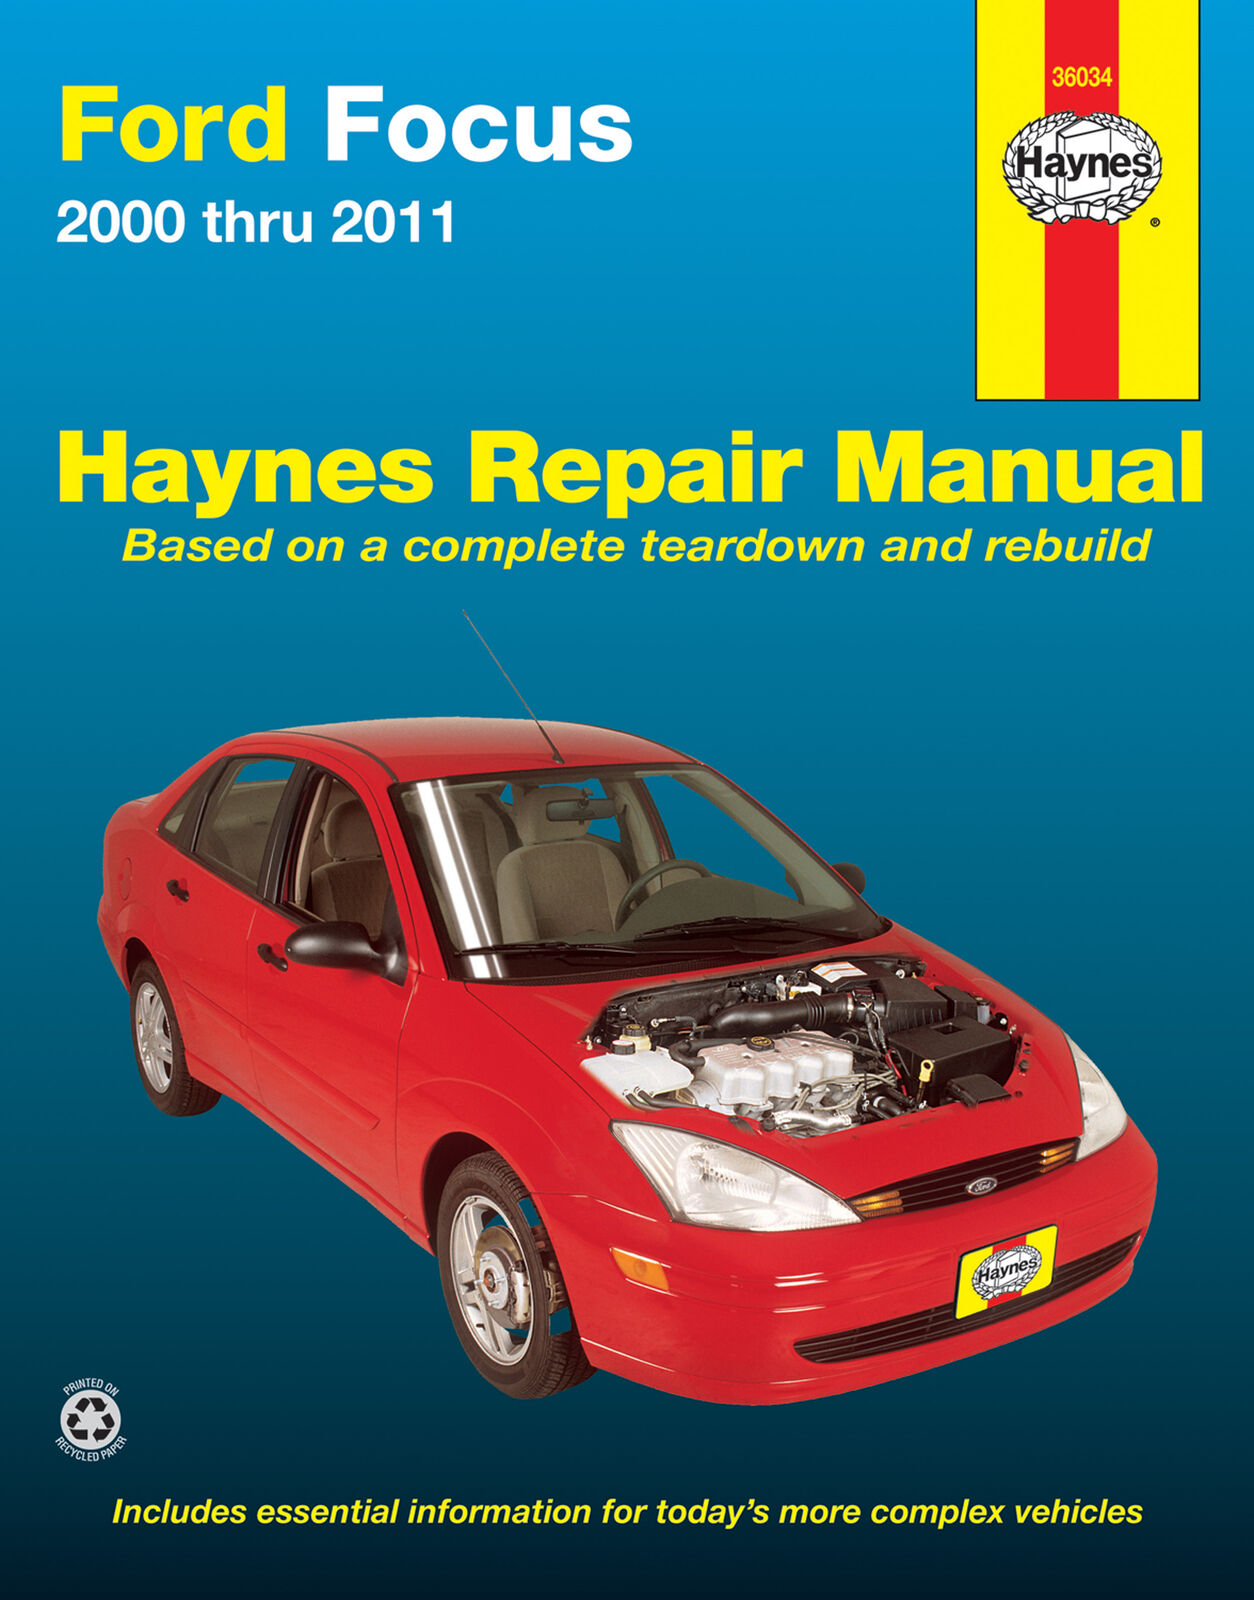 Ford Focus repair manual Haynes 2000 - 2011 NEW